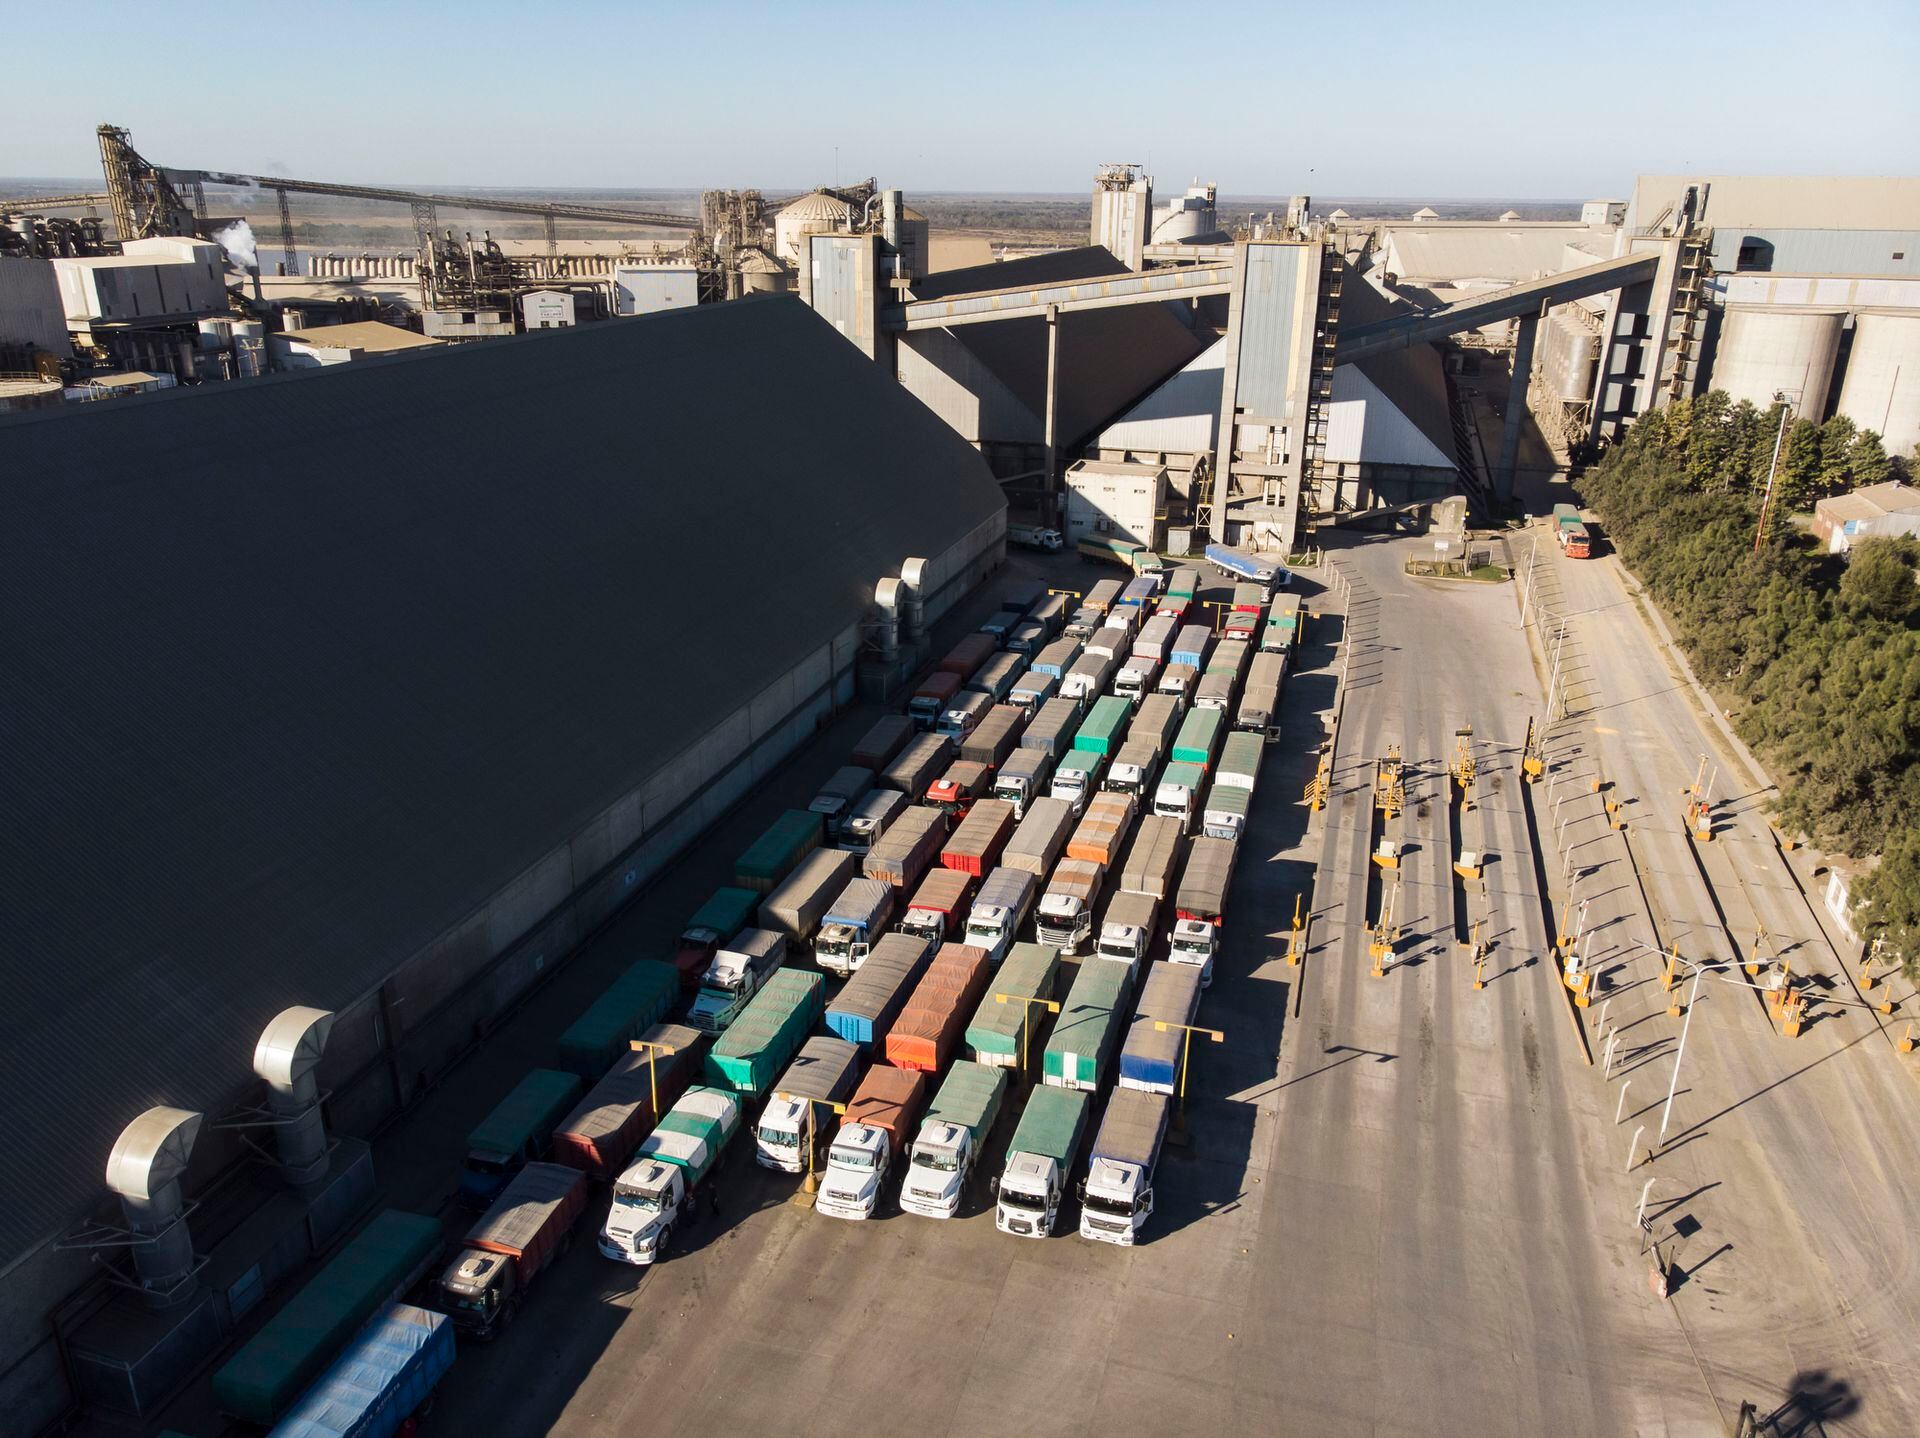 Todos los días entran en la zona portuaria unos 5000 vehículos de carga